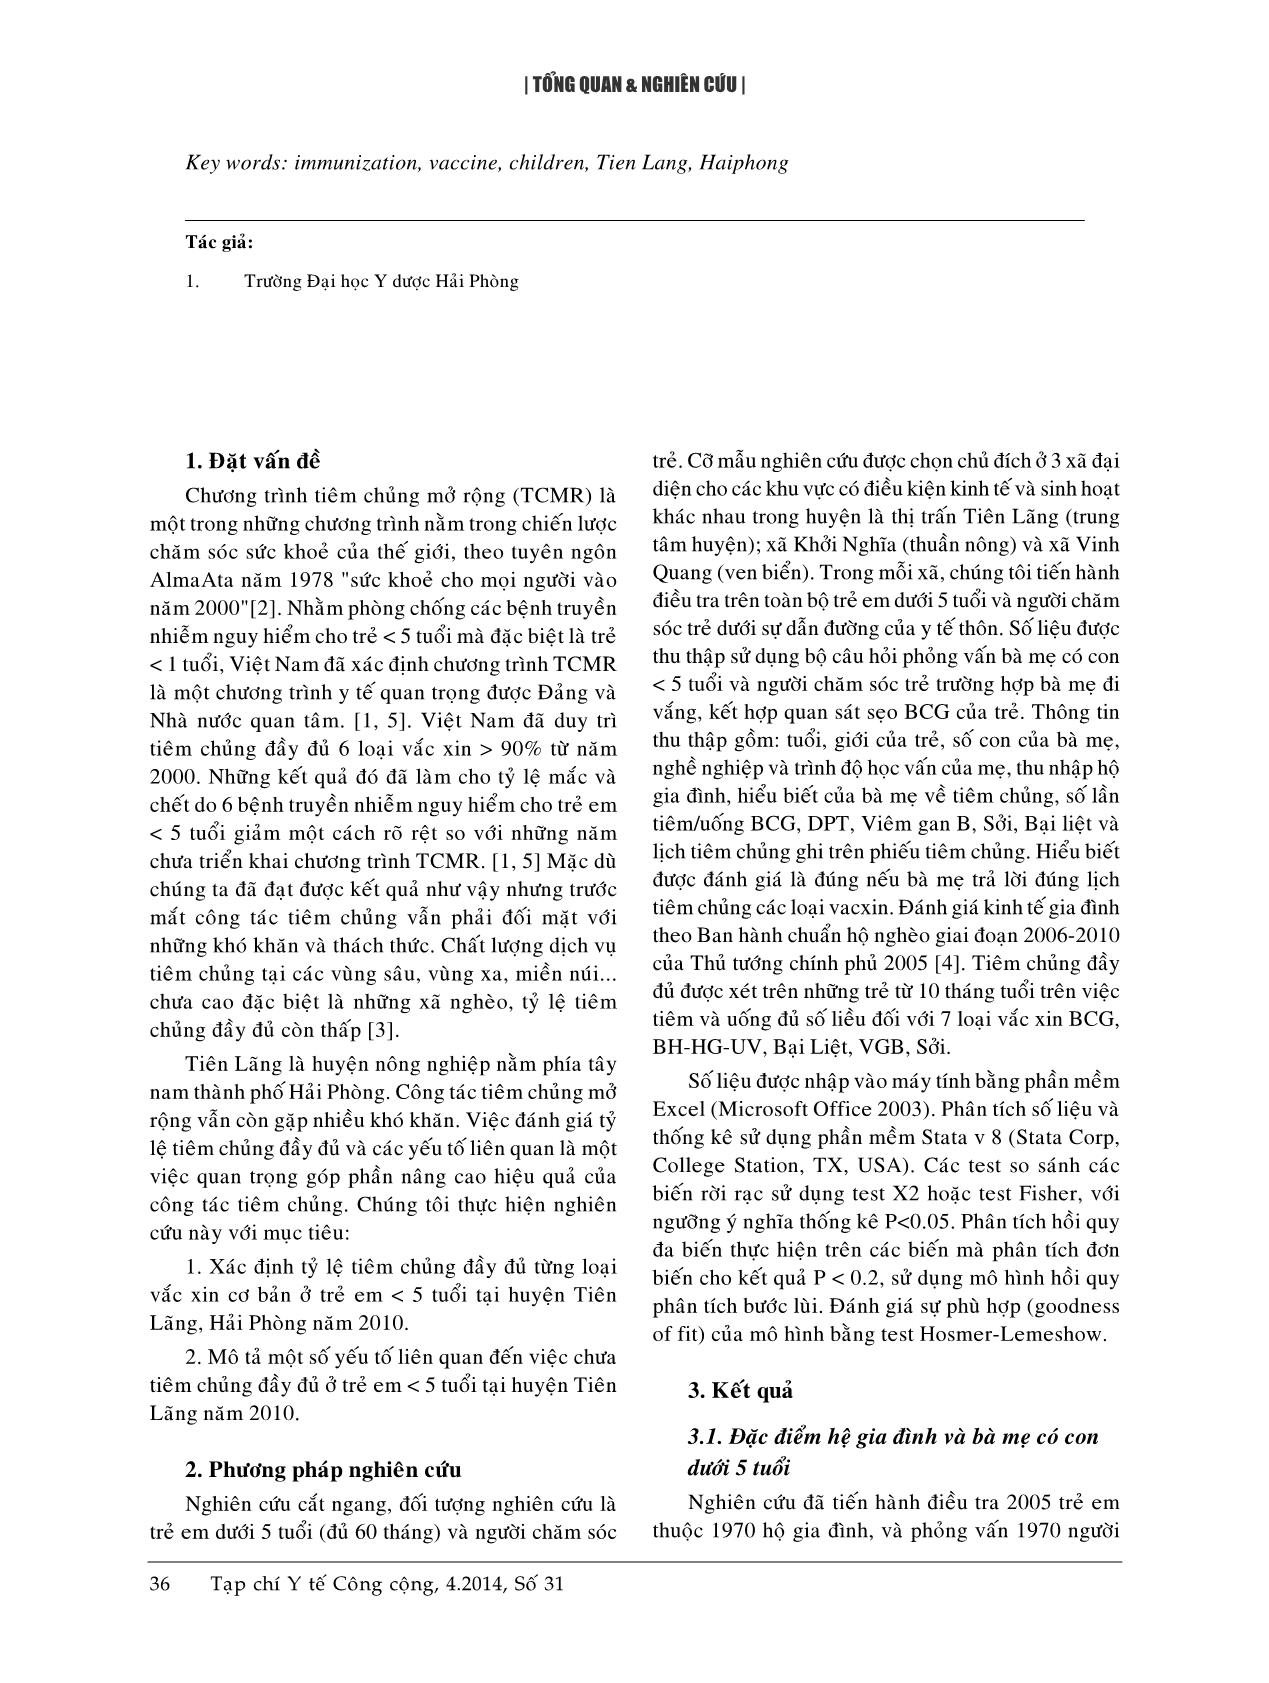 Tiêm chủng đầy đủ và một số yếu tố liên quan ở trẻ dưới 5 tuổi tại huyện Tiên Lãng, Hải Phòng - Năm 2010 trang 2